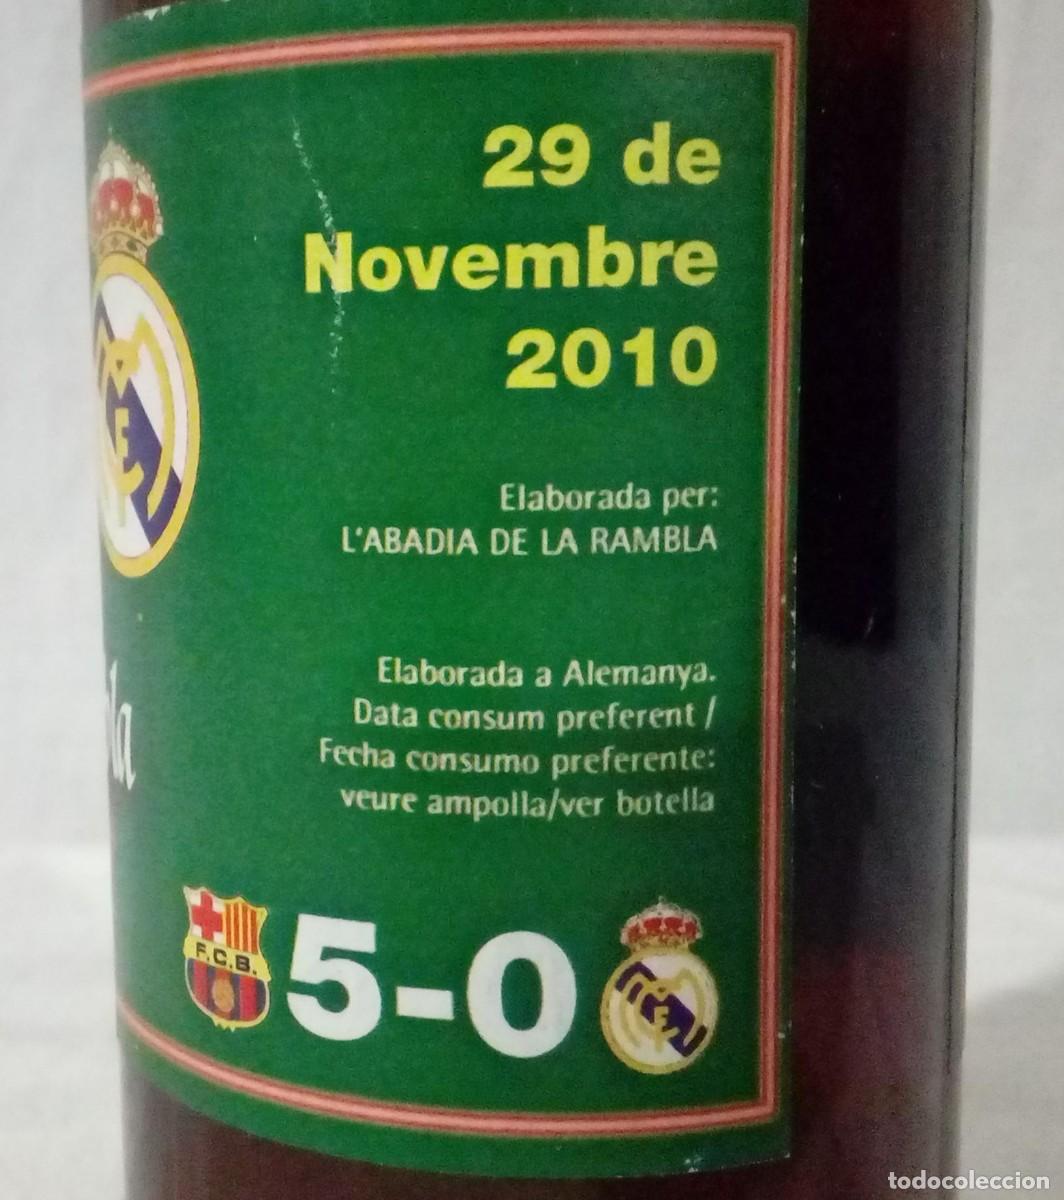 botella real madrid - Compra venta en todocoleccion